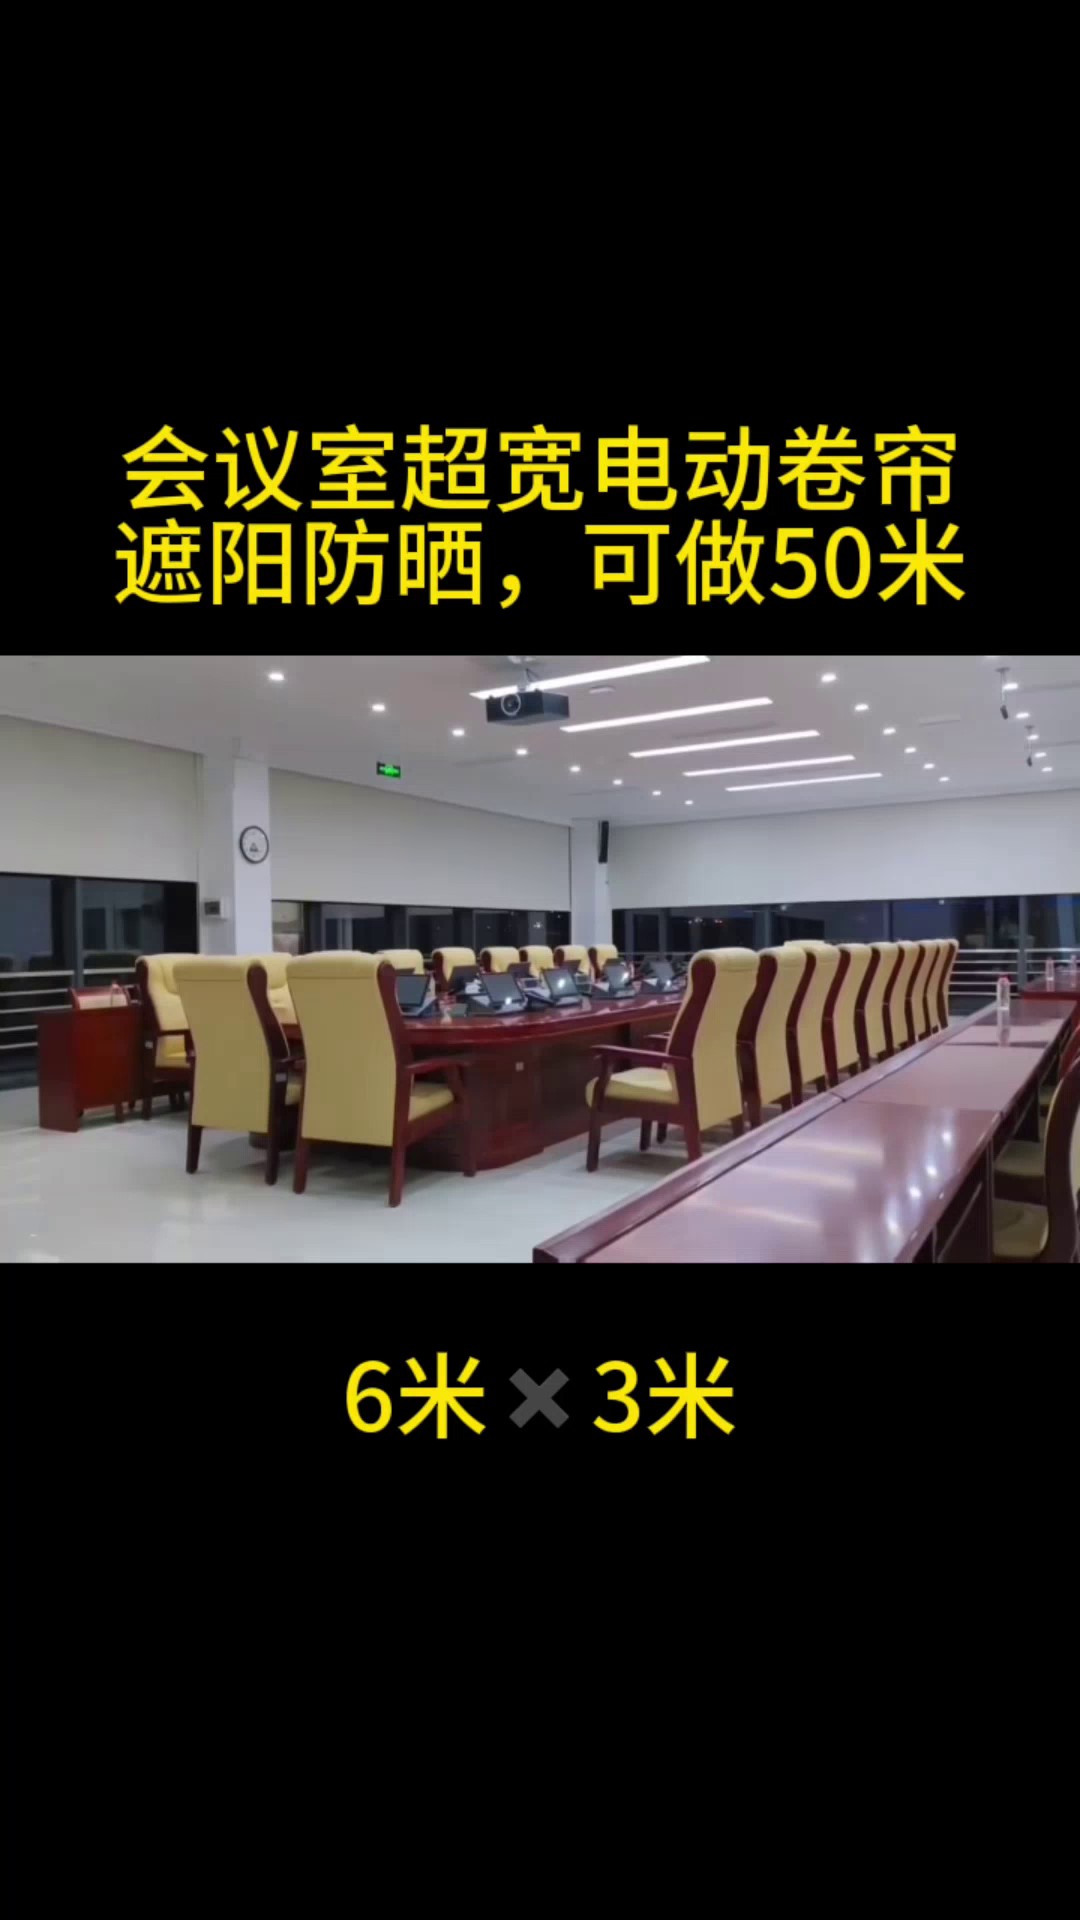 上海大型超宽电动卷帘分类,超宽电动卷帘